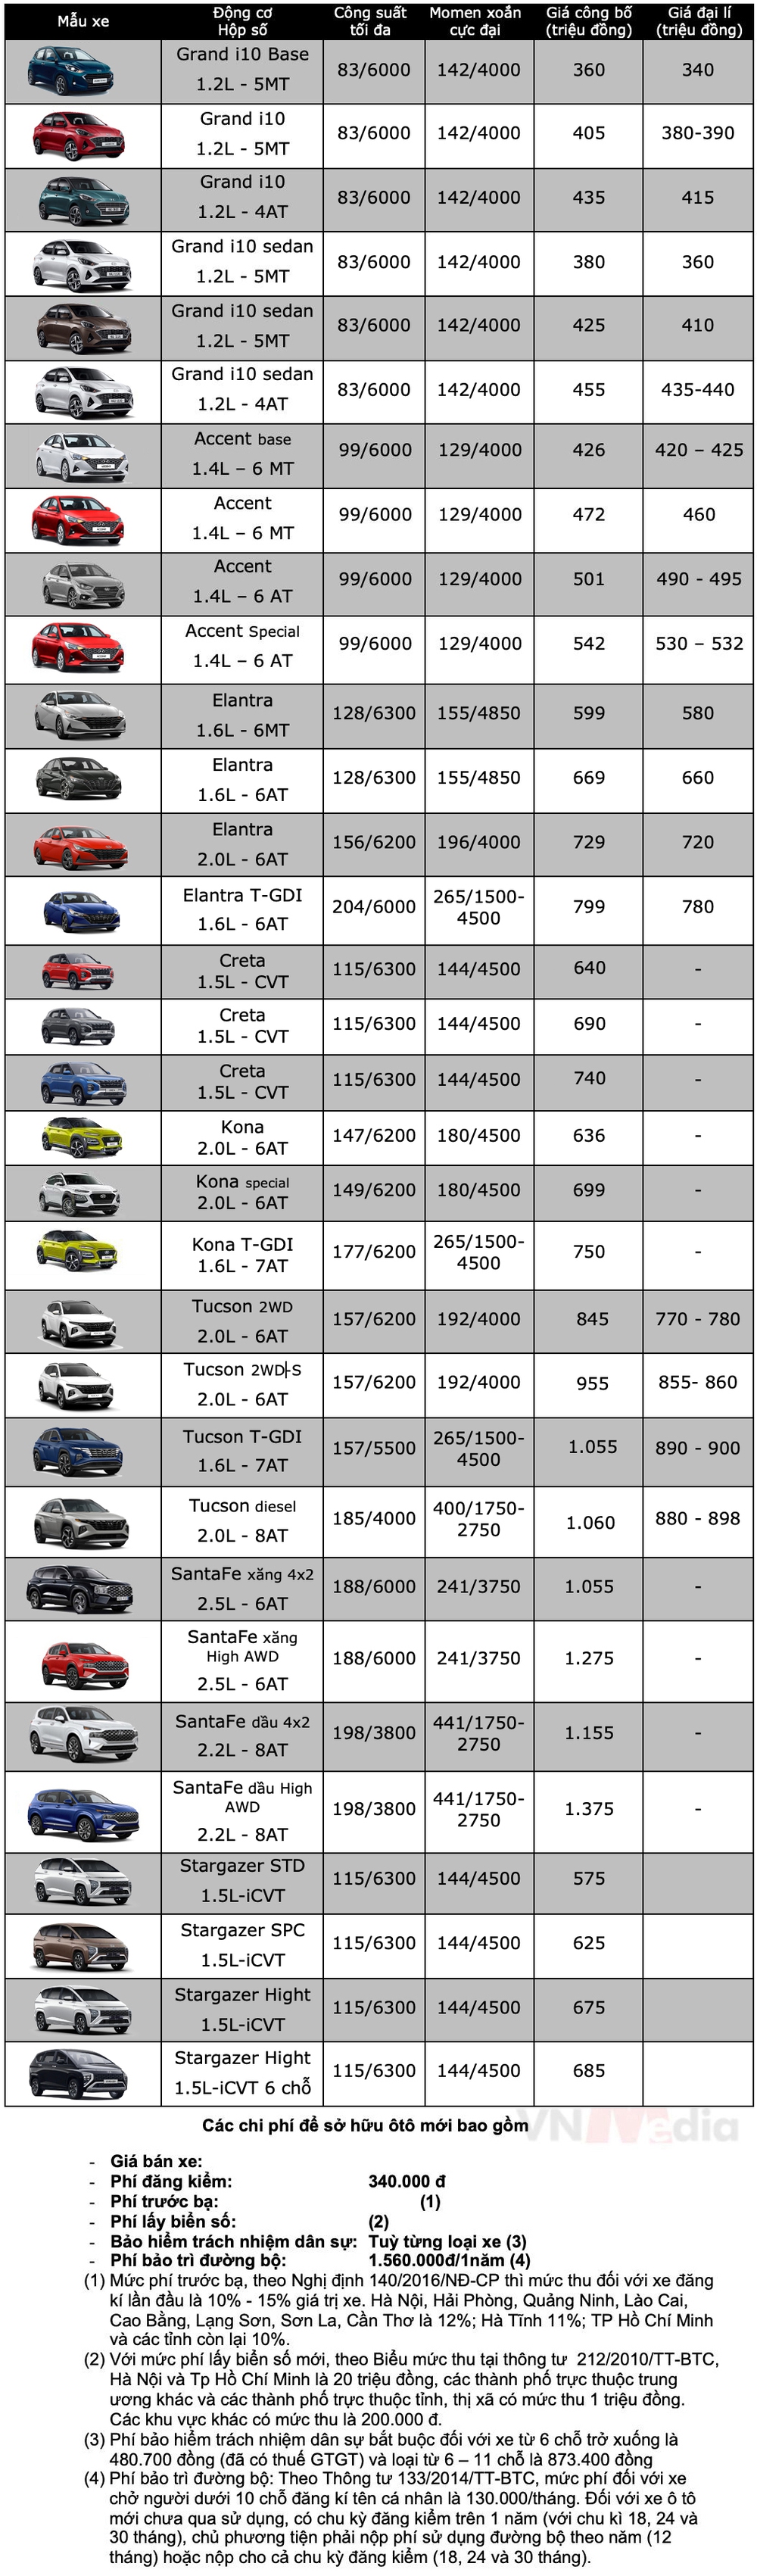 Bảng giá xe Hyundai tháng 5: Hyundai Stargazer được ưu đãi 70 triệu đồng - Ảnh 2.